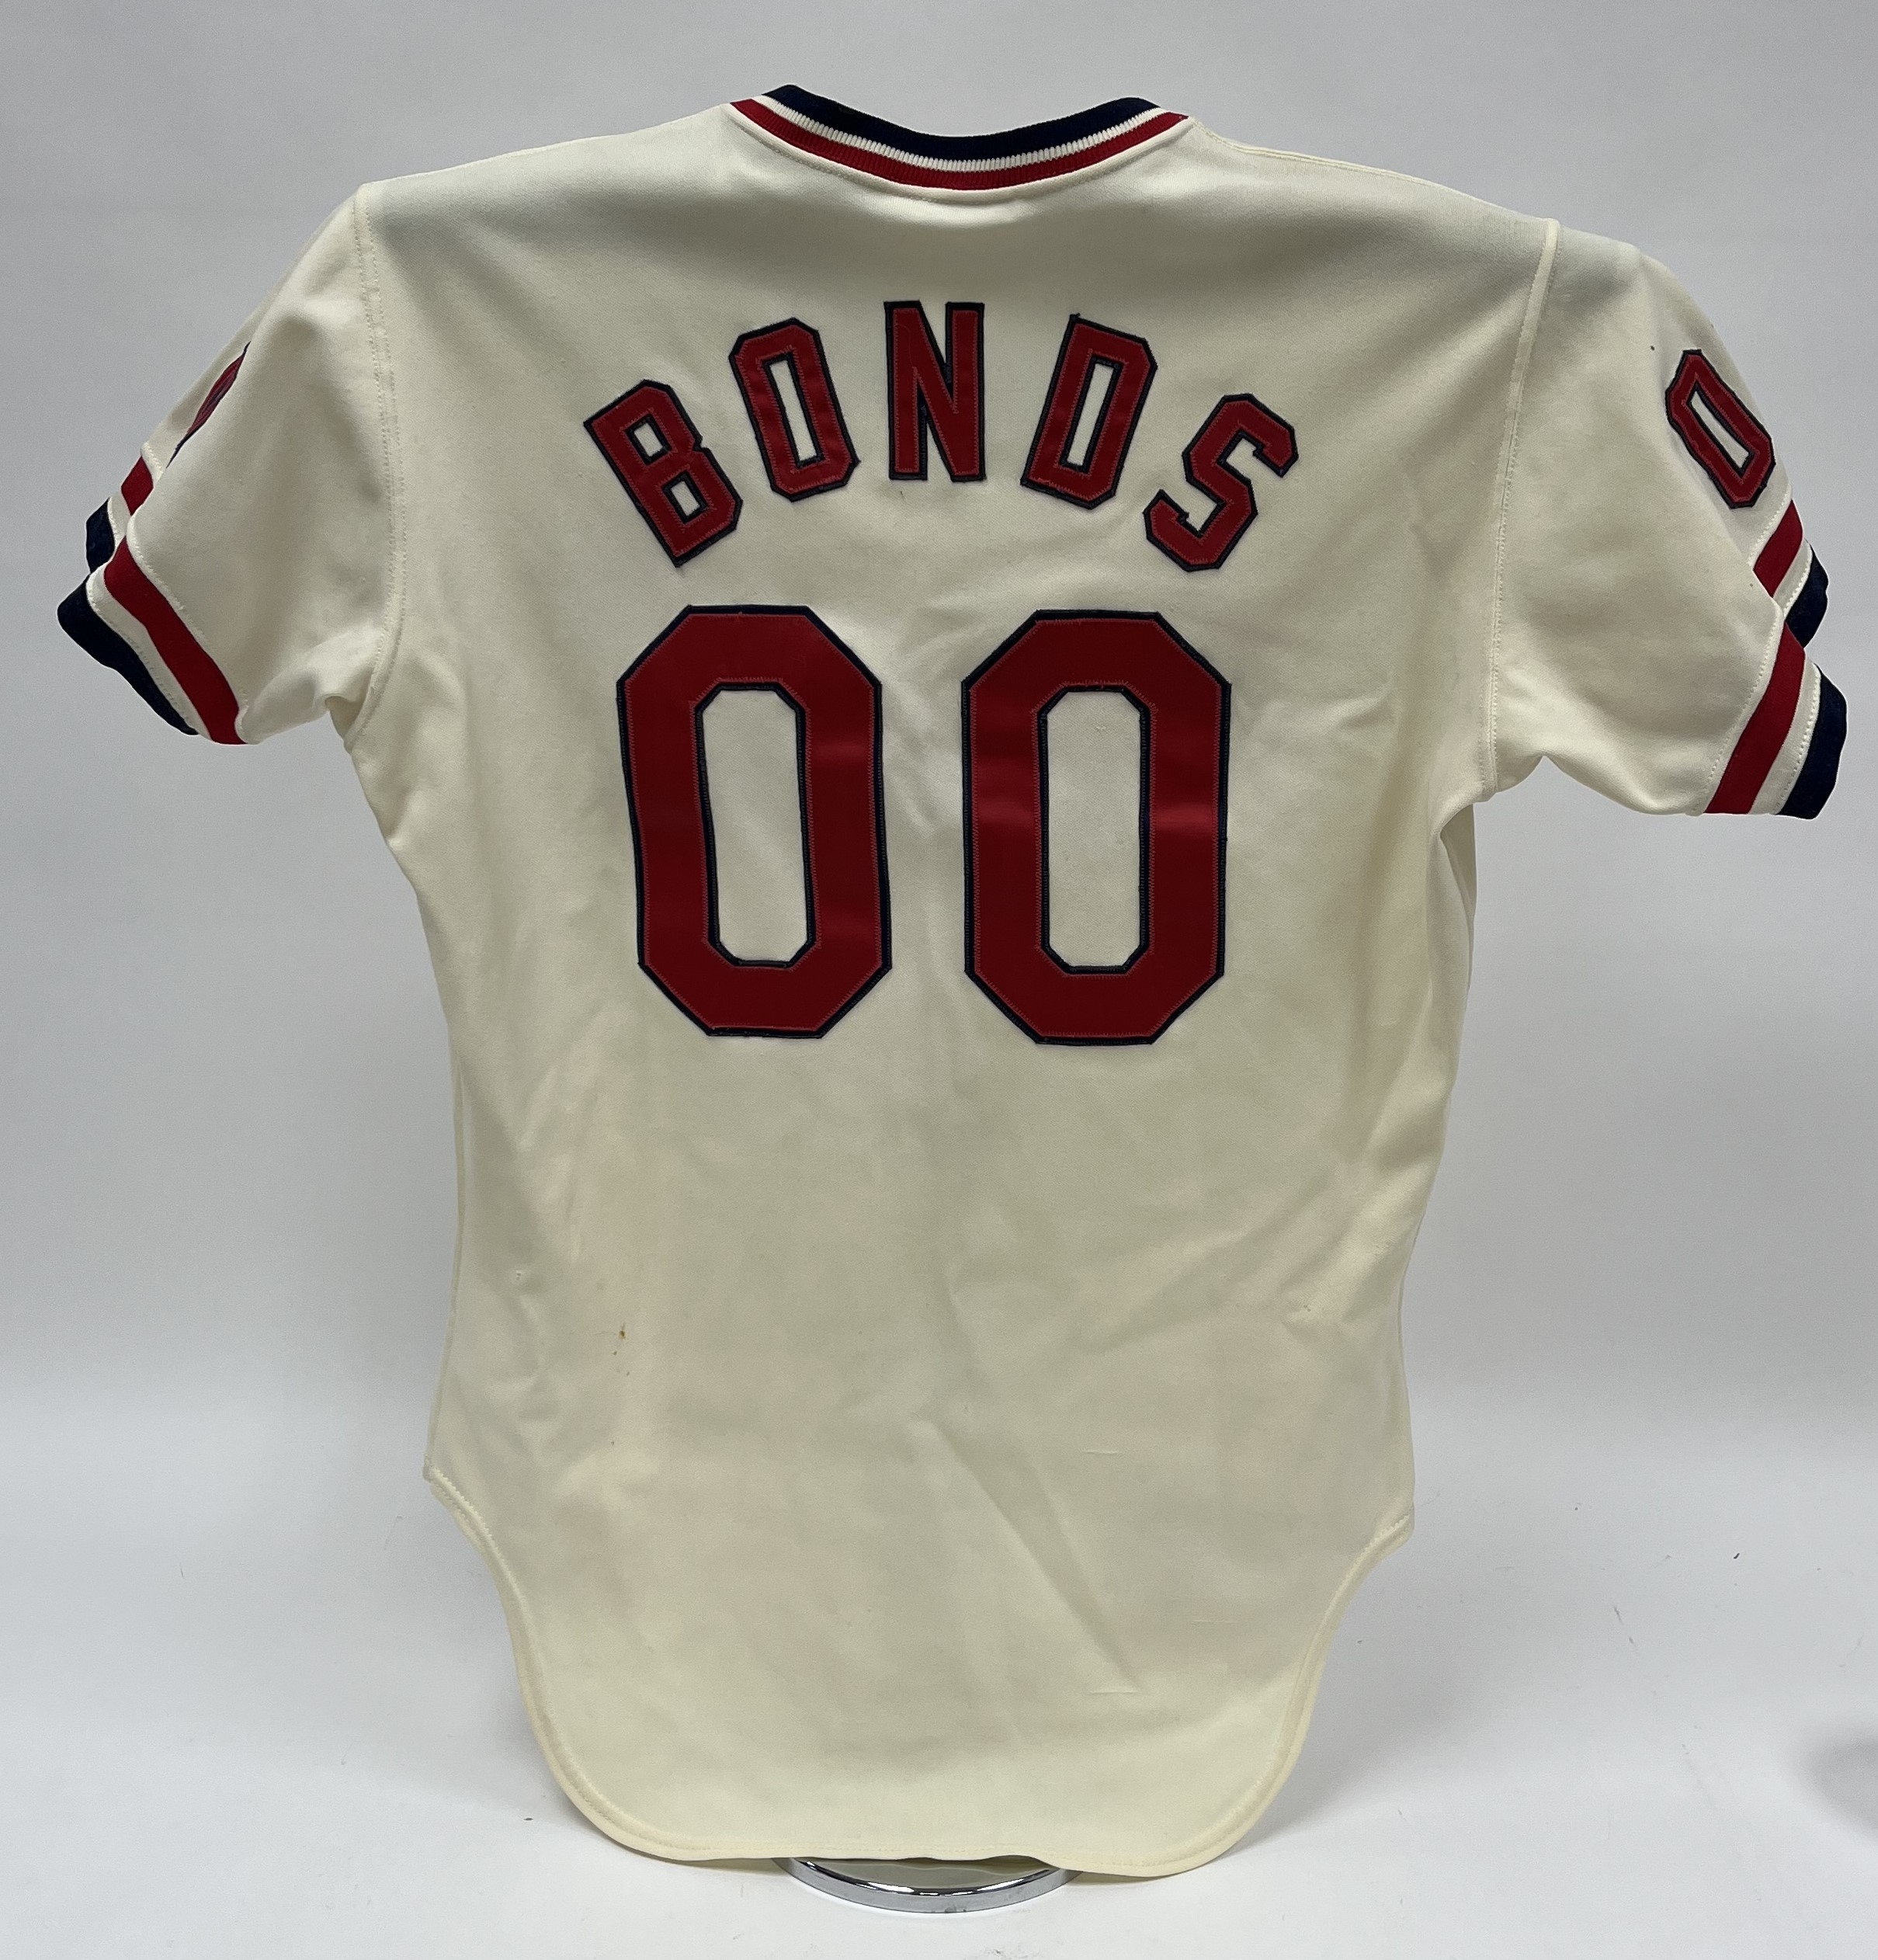 bonds baseball jersey